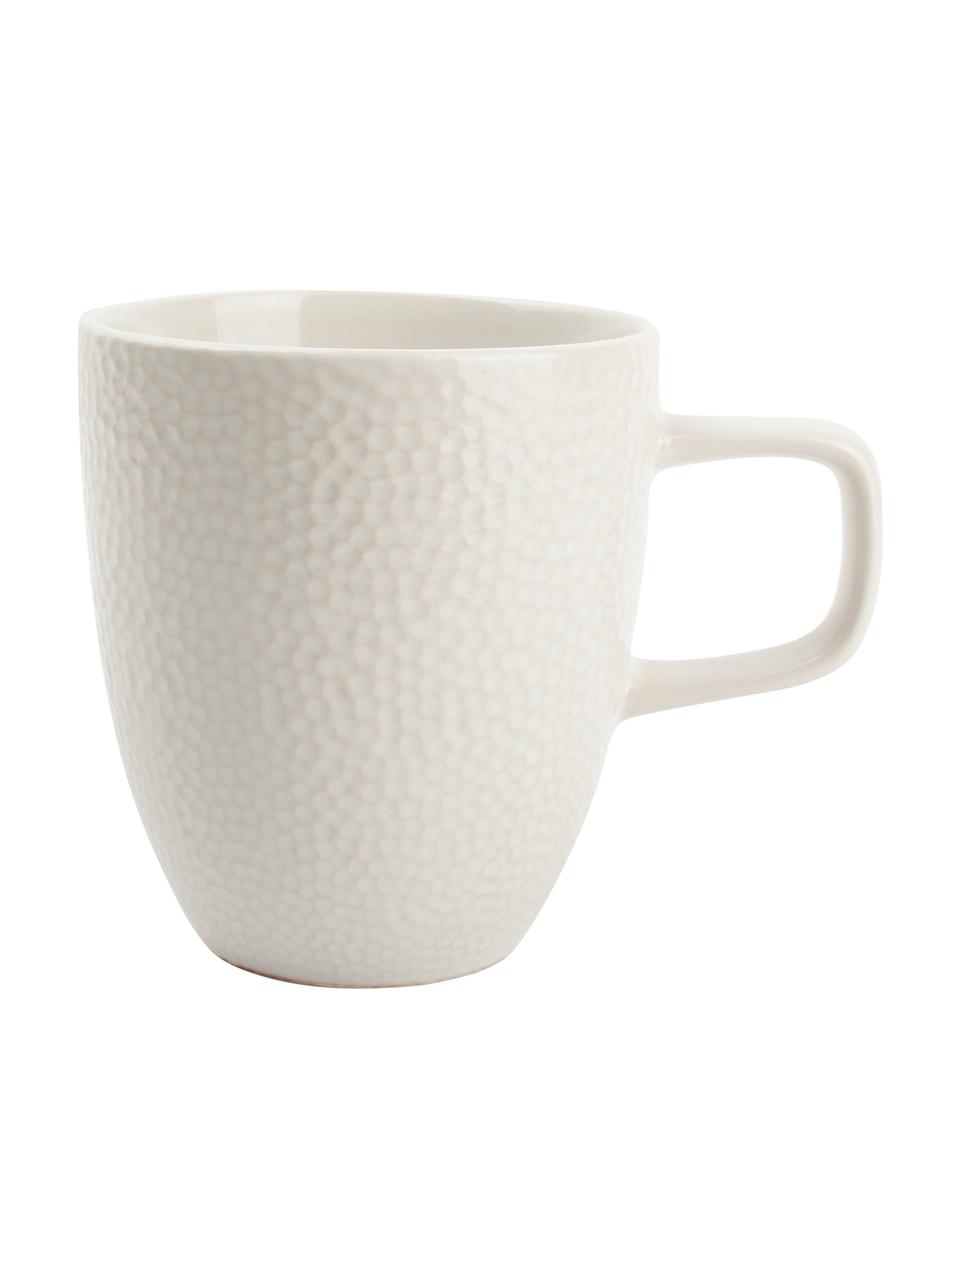 Tassen Mielo mit strukturierter Oberfläche, 4 Stück, Steingut, Weiß, 9 x 10 cm